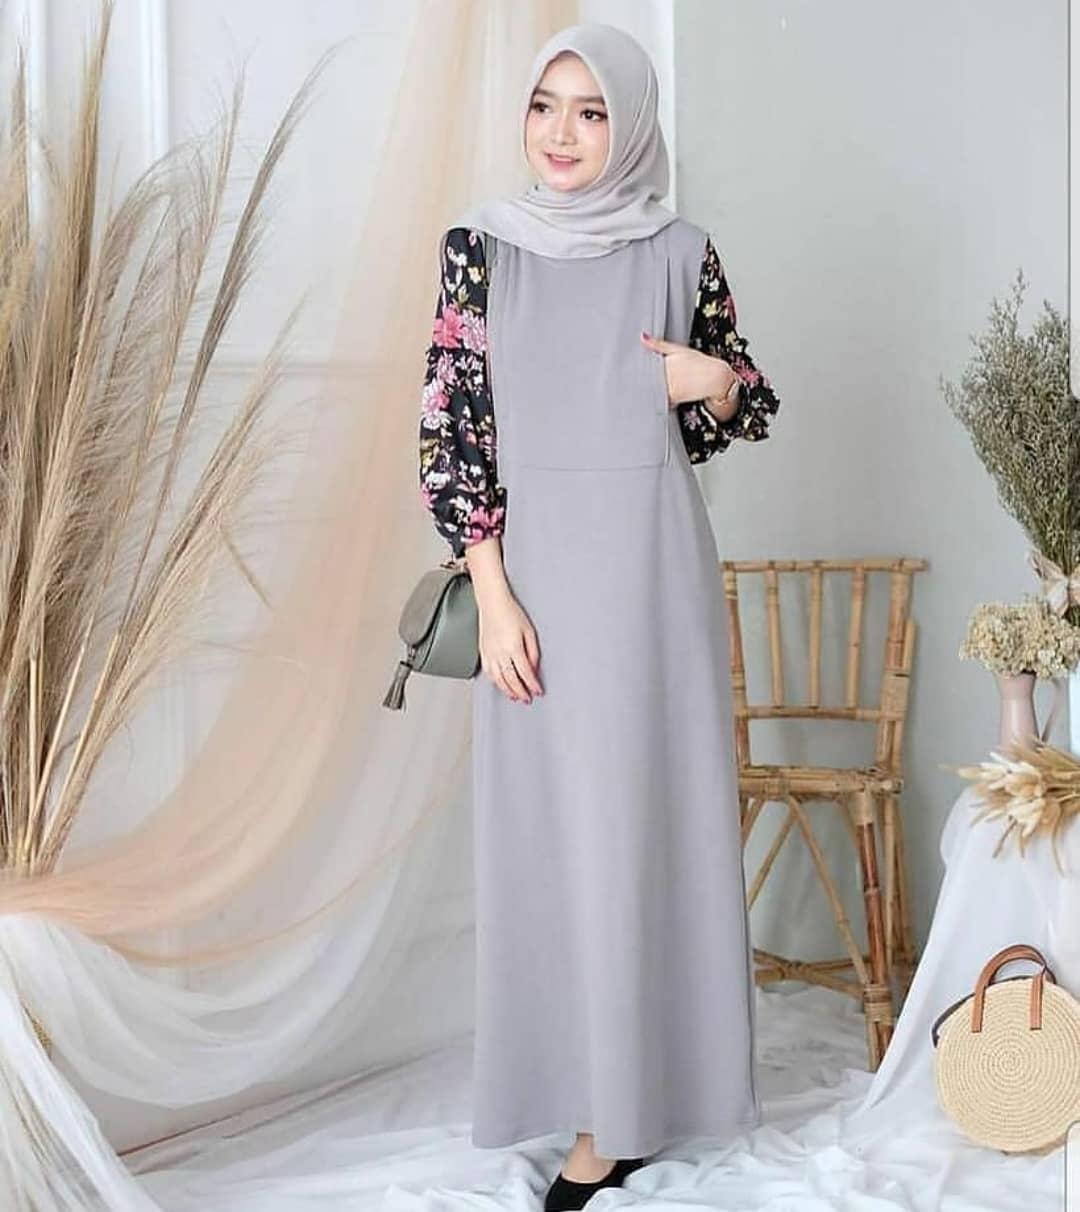 Baju Muslim Modern HUZRA DRESS Bahan MOSSCRAPE MIX MONALISA Gamis Wanita Terbaru 2020 Modern Remaja Gamis Wanita Gamis Wanita Murah Simple